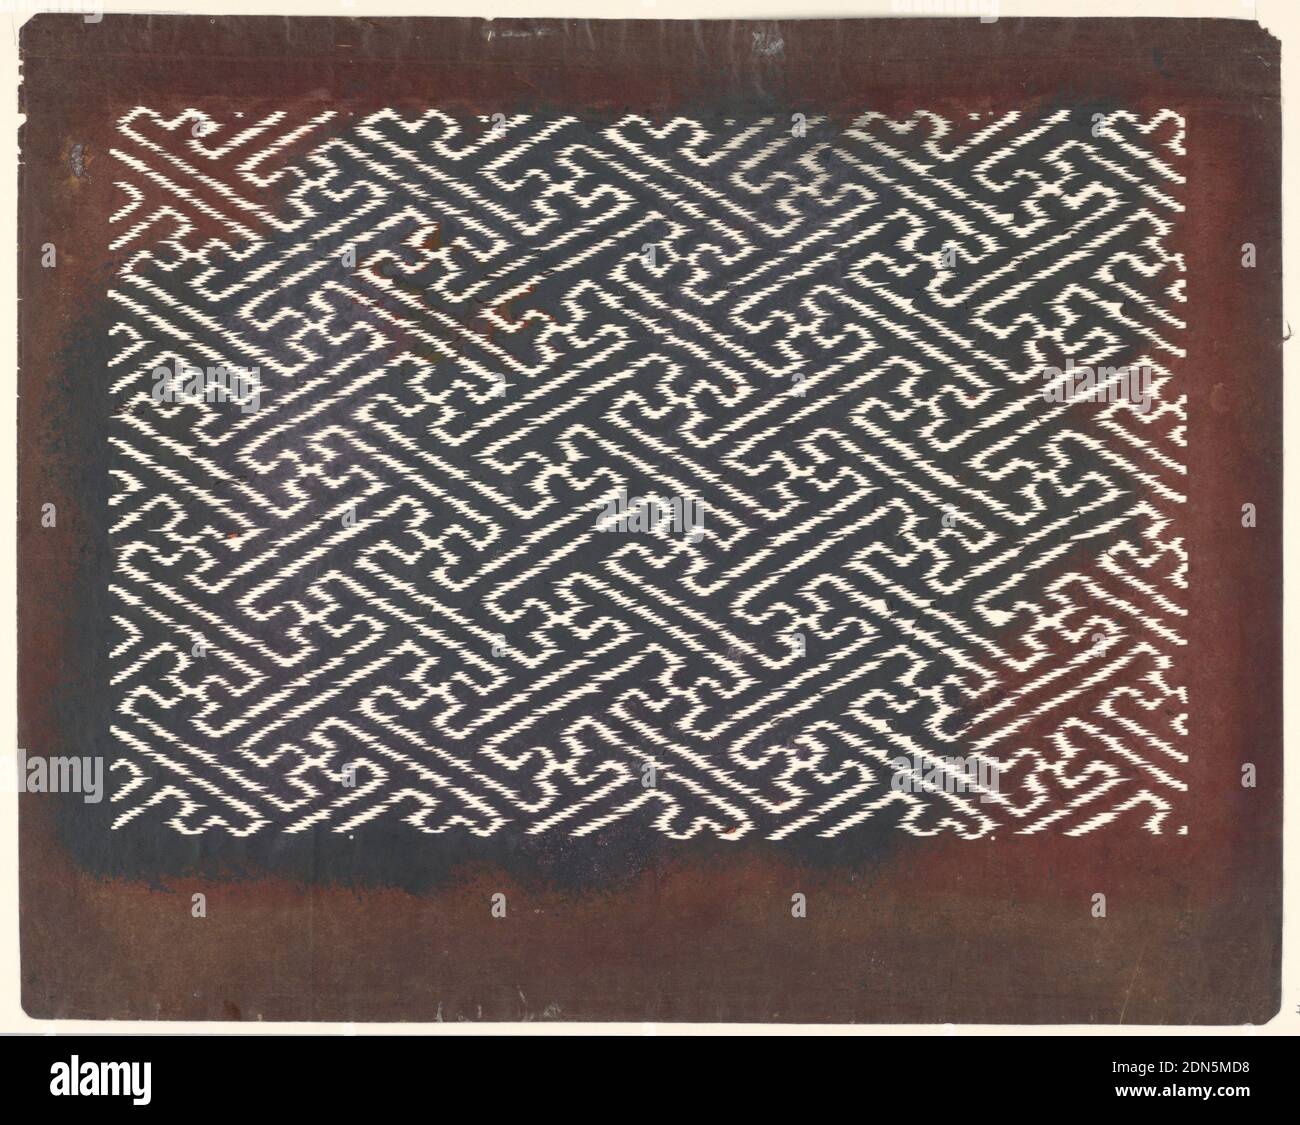 Fylfot-Motiv, Mulberry-Papier (Kozo washi) mit fermentiertem Persimmon-Tannin (kakishibu) behandelt, Fylfot (sayagata) ist ein beliebtes geometrisches Design, das während der Edo-Ära "Saya" genannt wurde. Dieses Muster ist ein Standard-Kartensymbol für buddhistische Tempel in Japan. Ursprünglich stammte dieses Piktogramm aus dem Brusthaar des hinduistischen Gottes der Liebe Vishnu. Heute stellt sie ein gutes Omen und eine Tugend dar. Die zackigen Kanten ähneln der Wirkung der Ikat-Färbung., Japan, Mitte 18. - Anfang 19. Jahrhundert, Textildesigns, Katagami, Katagami Stockfoto